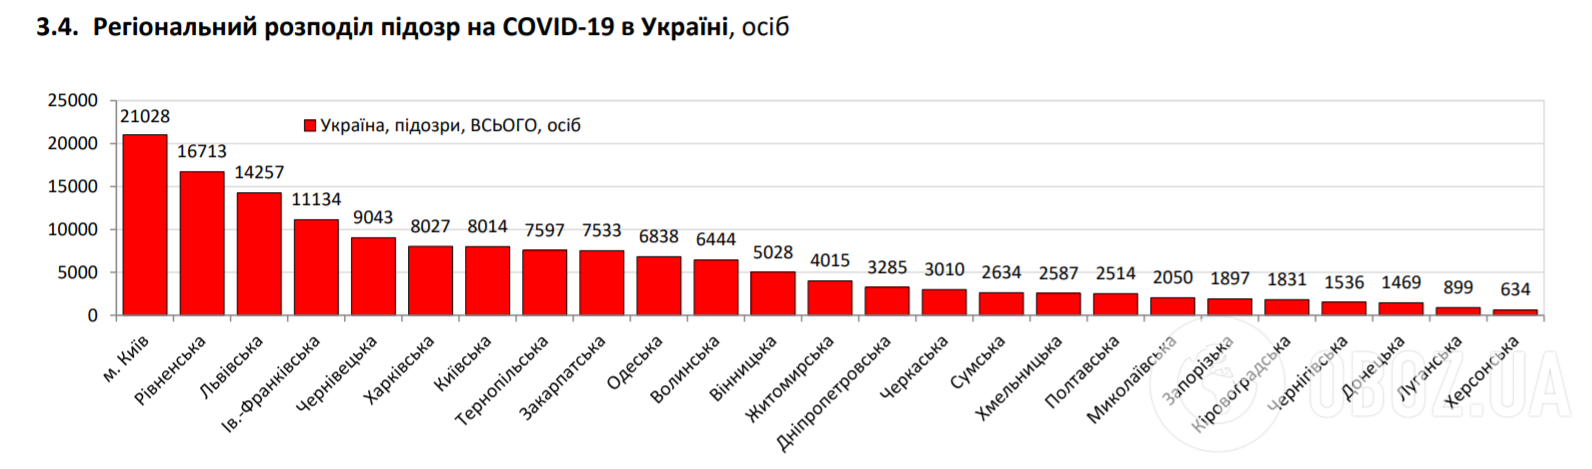 Регіональний розподіл підозр на COVID-19 в Україні